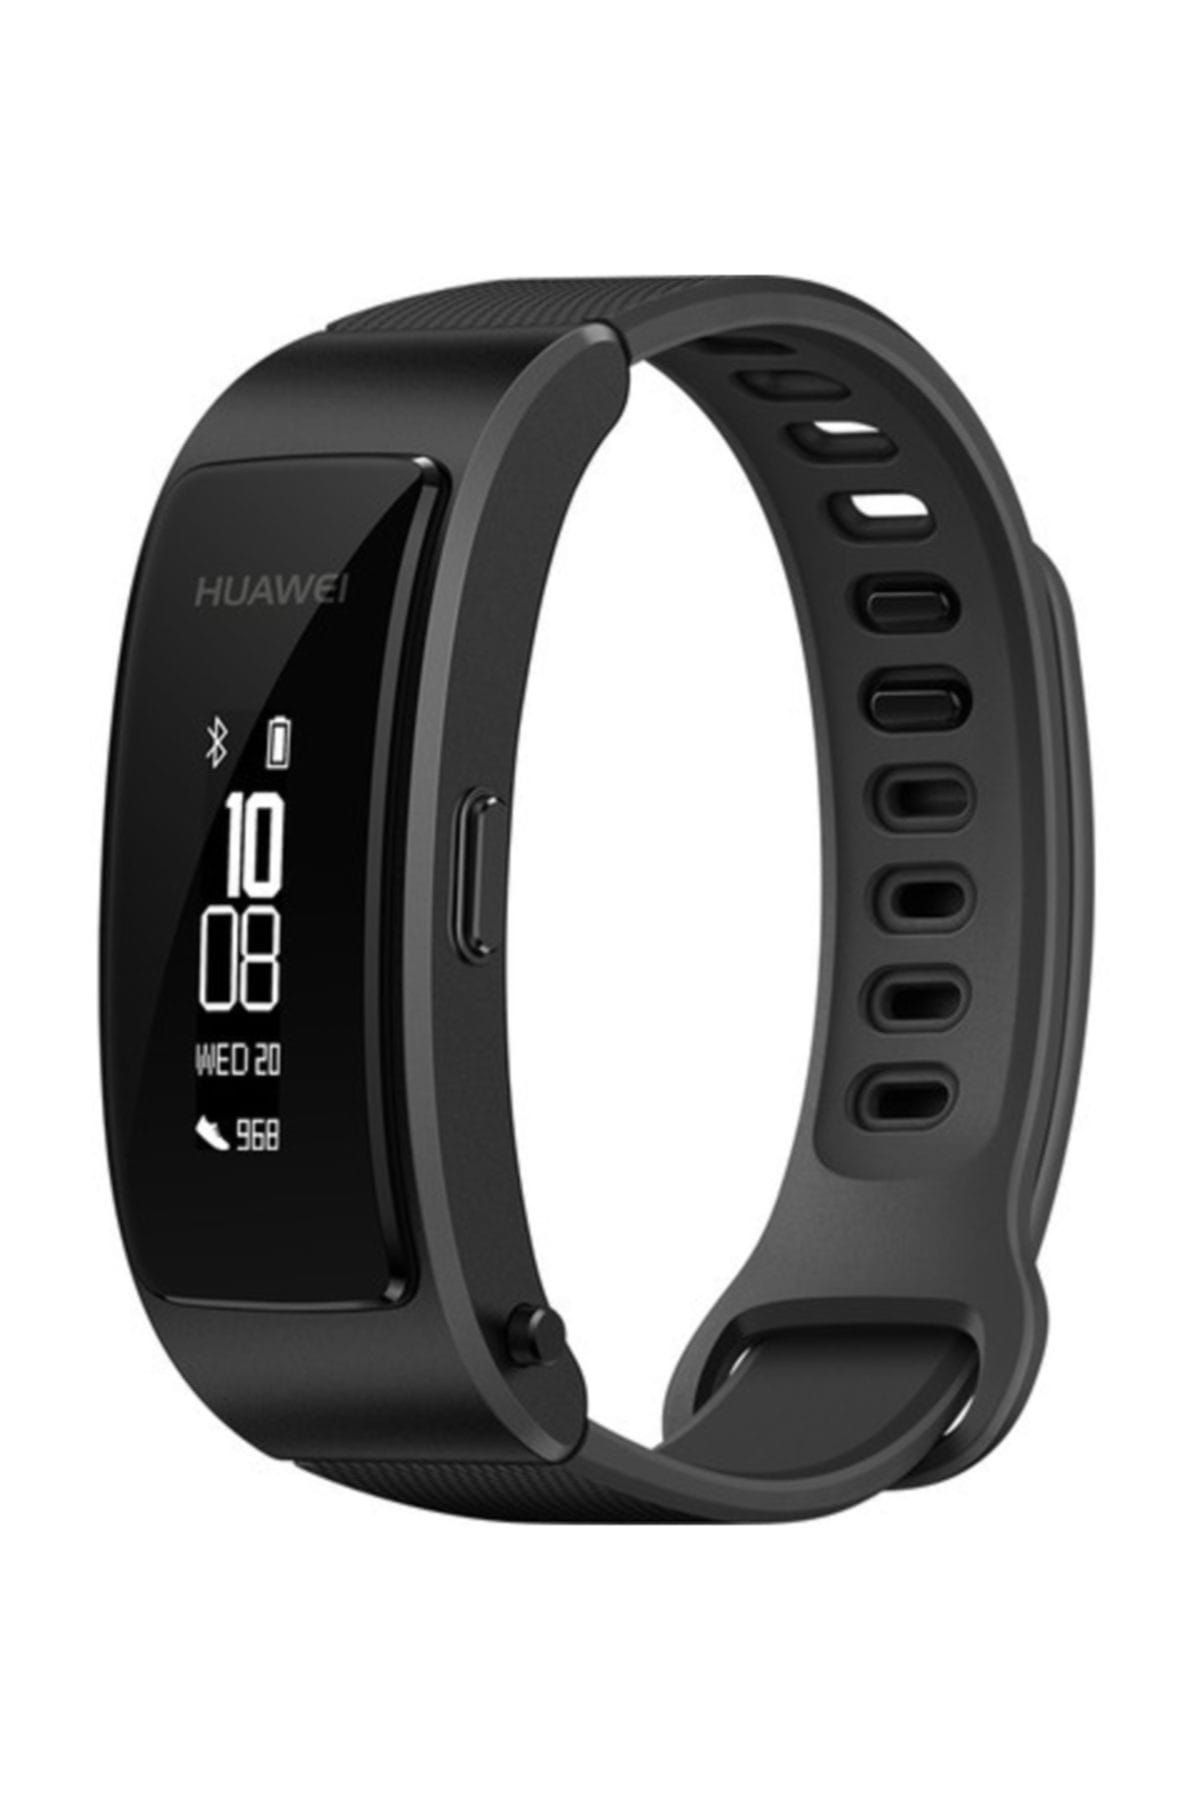 Huawei B3 Lite Talkband 2 Akıllı Saat - Siyah